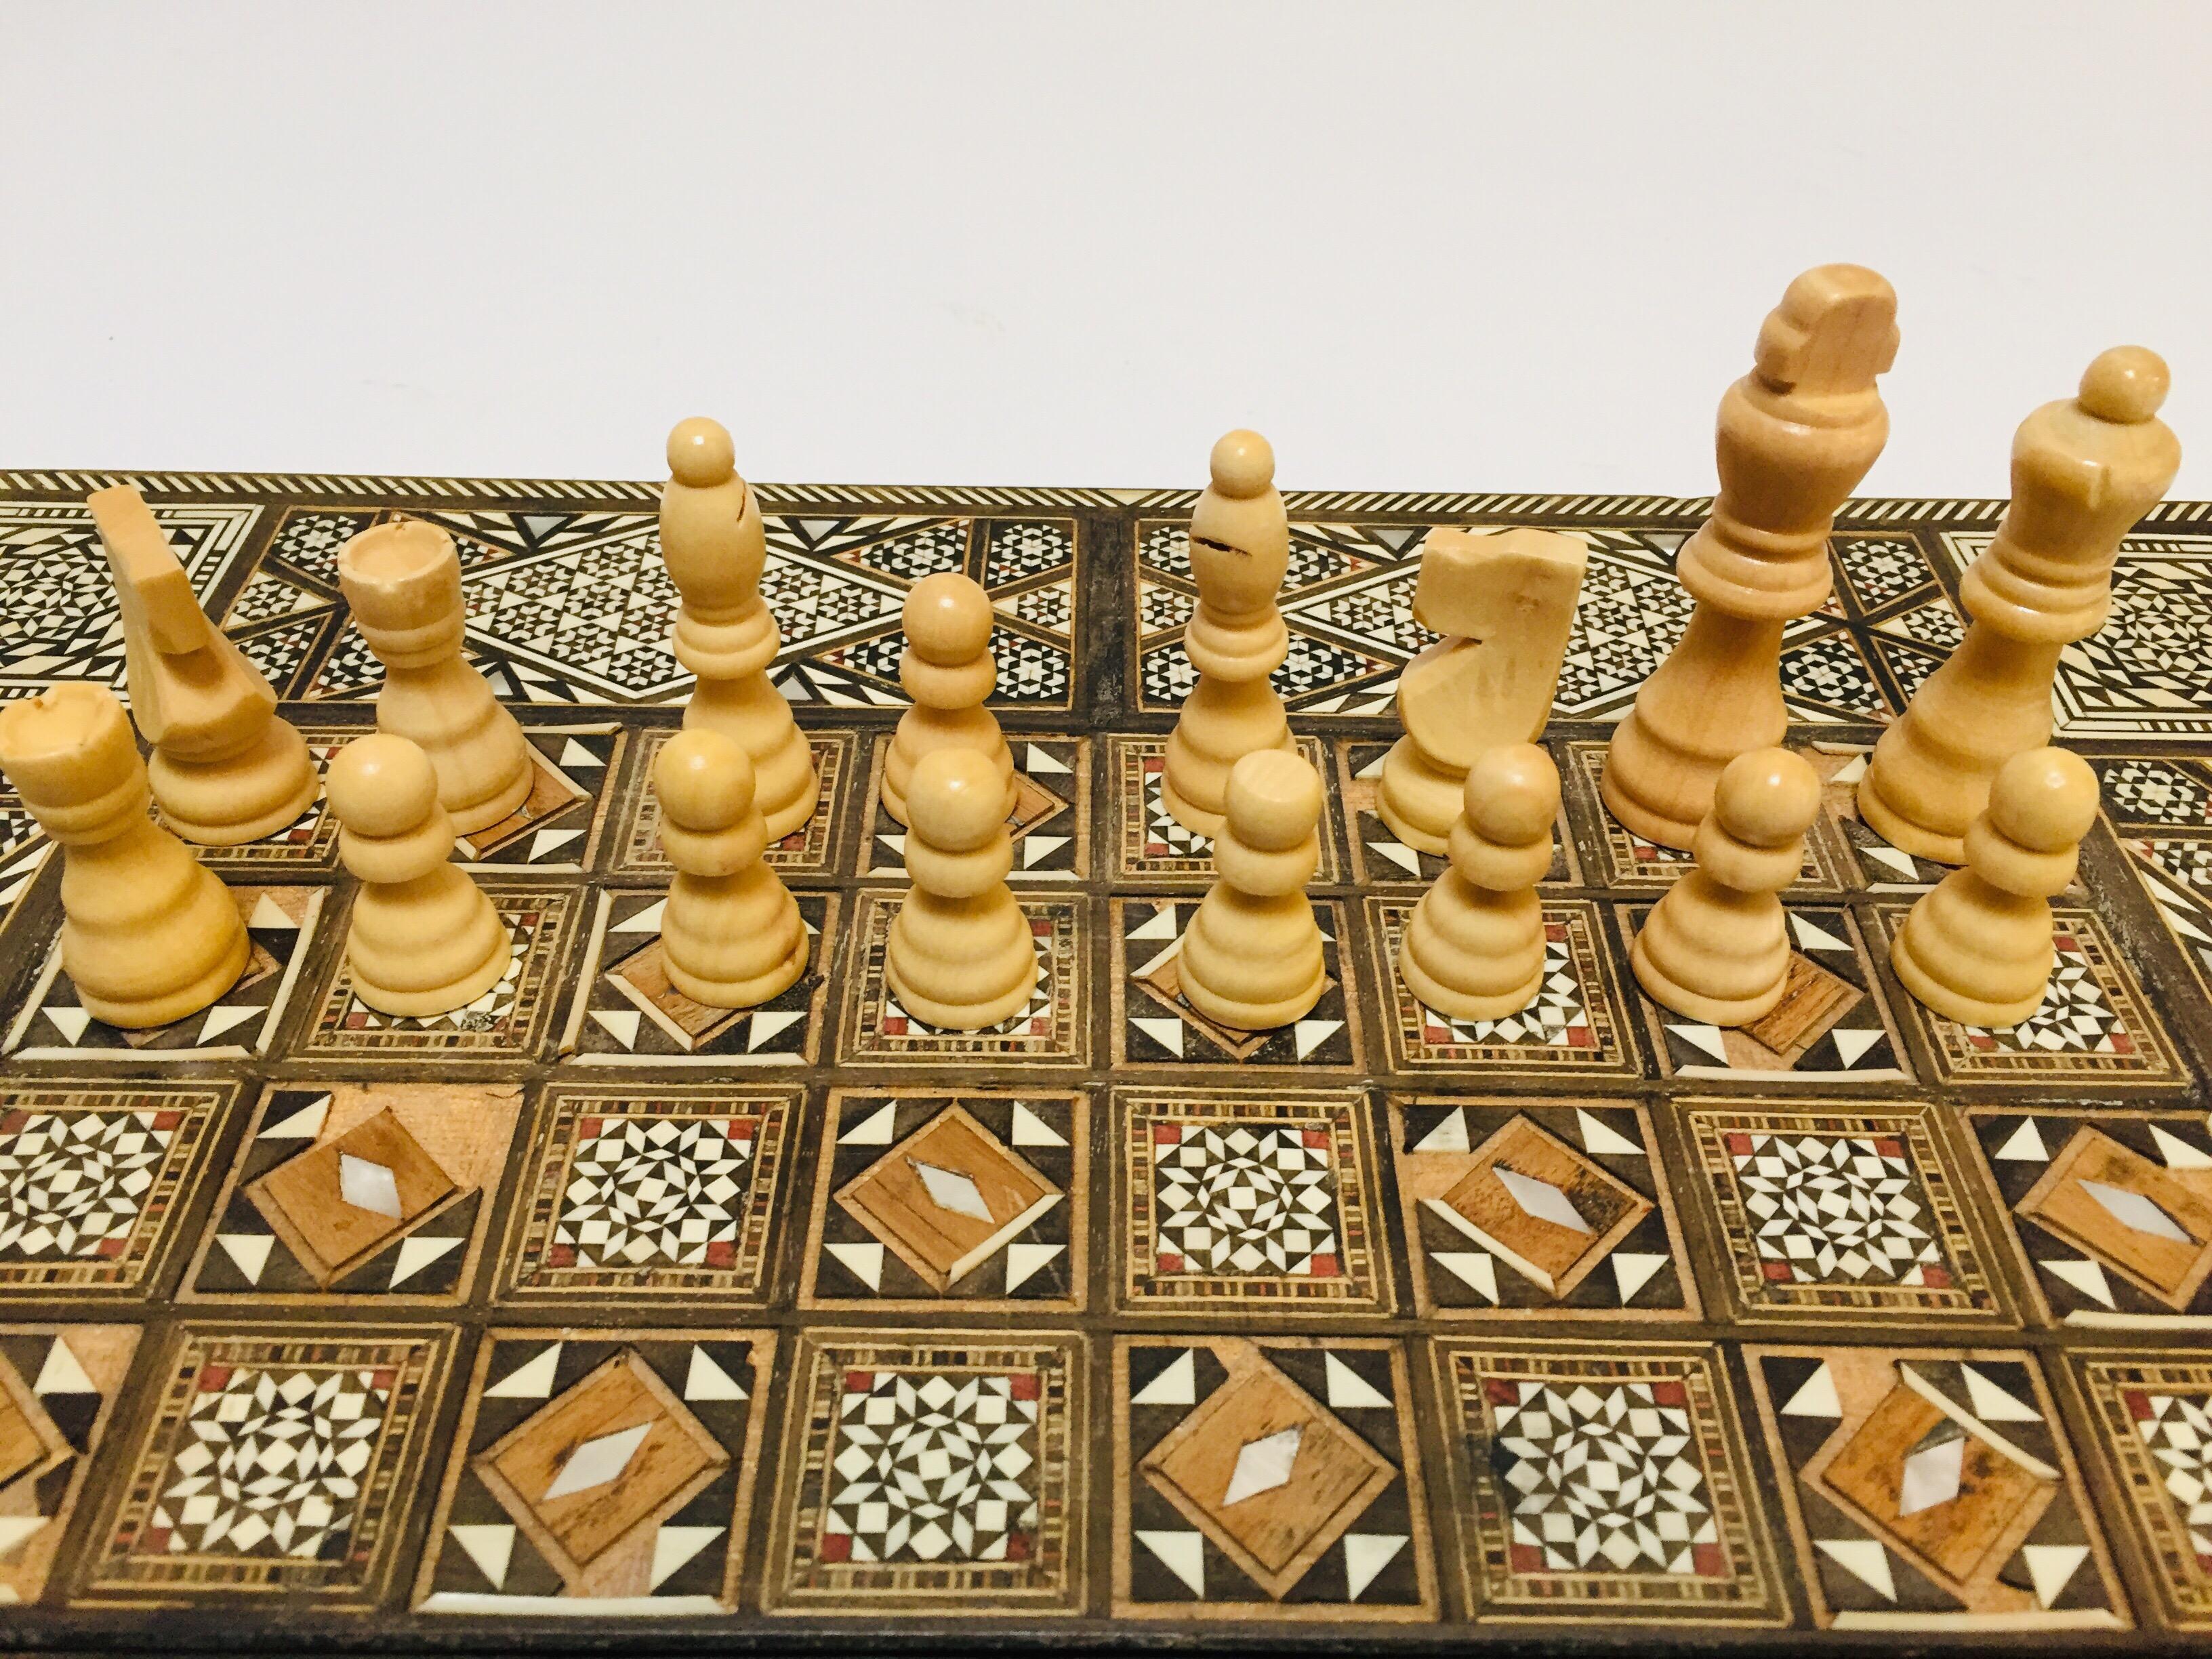 Vieux grand jeu complet de backgammon et d'echecs en mosaique incrustee syrienne 5